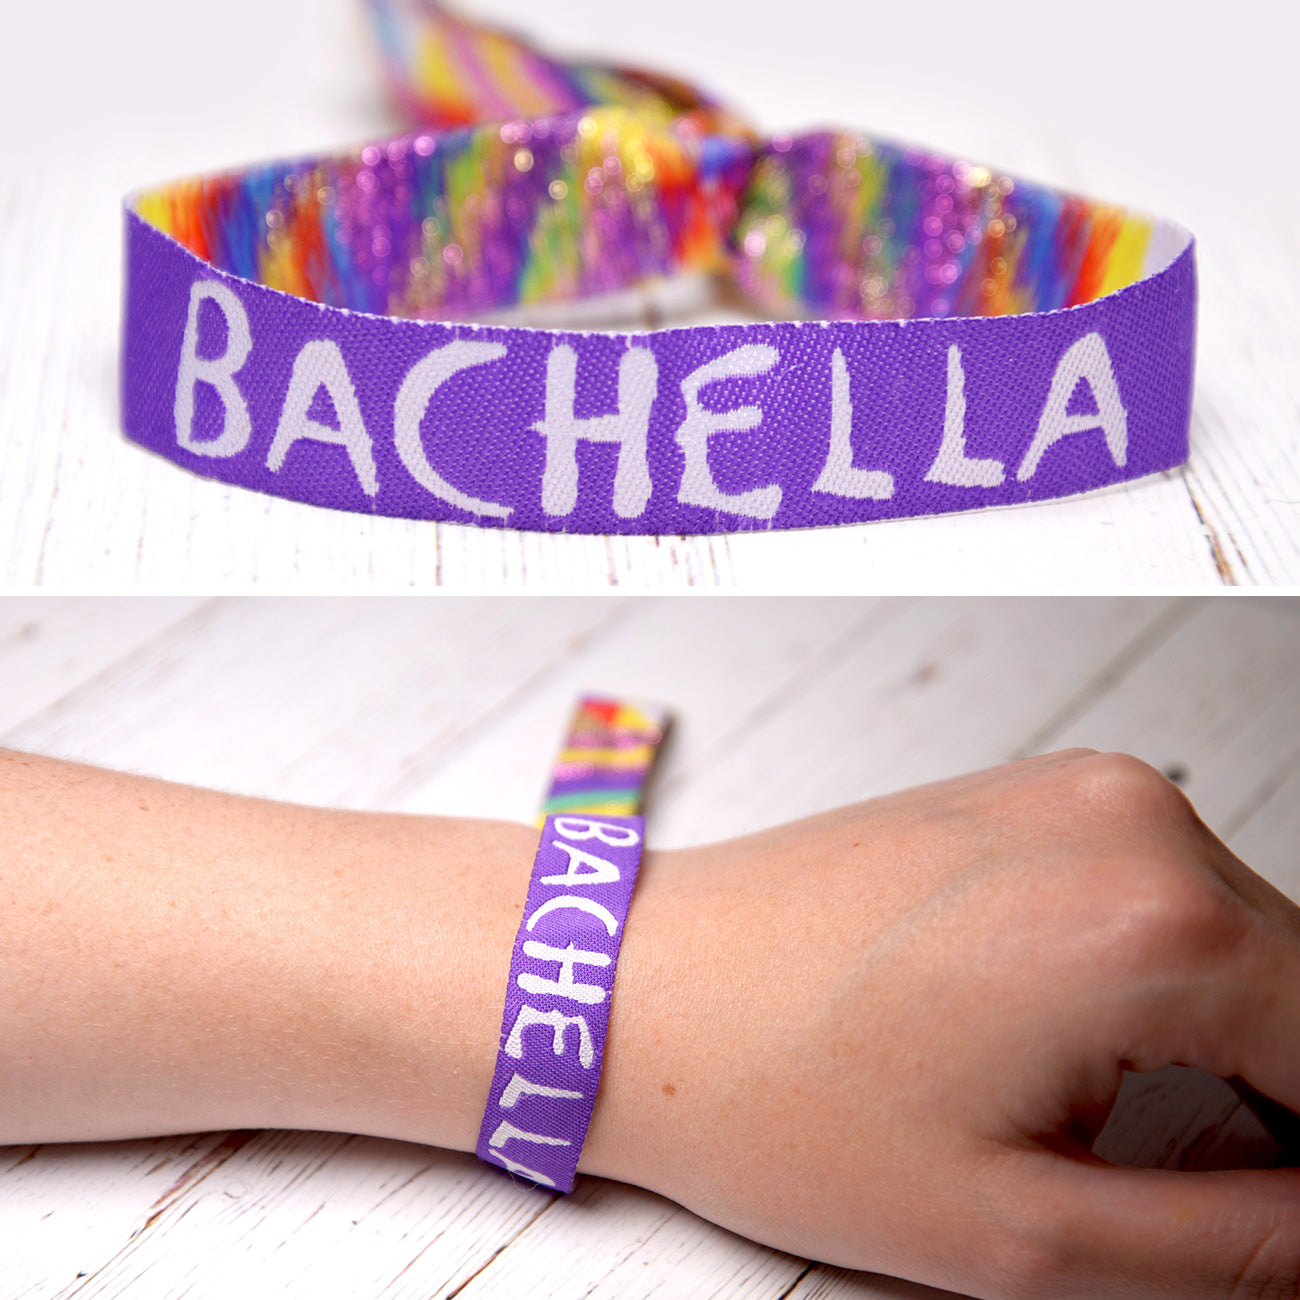 bachella theme bachelorette party wristband favors